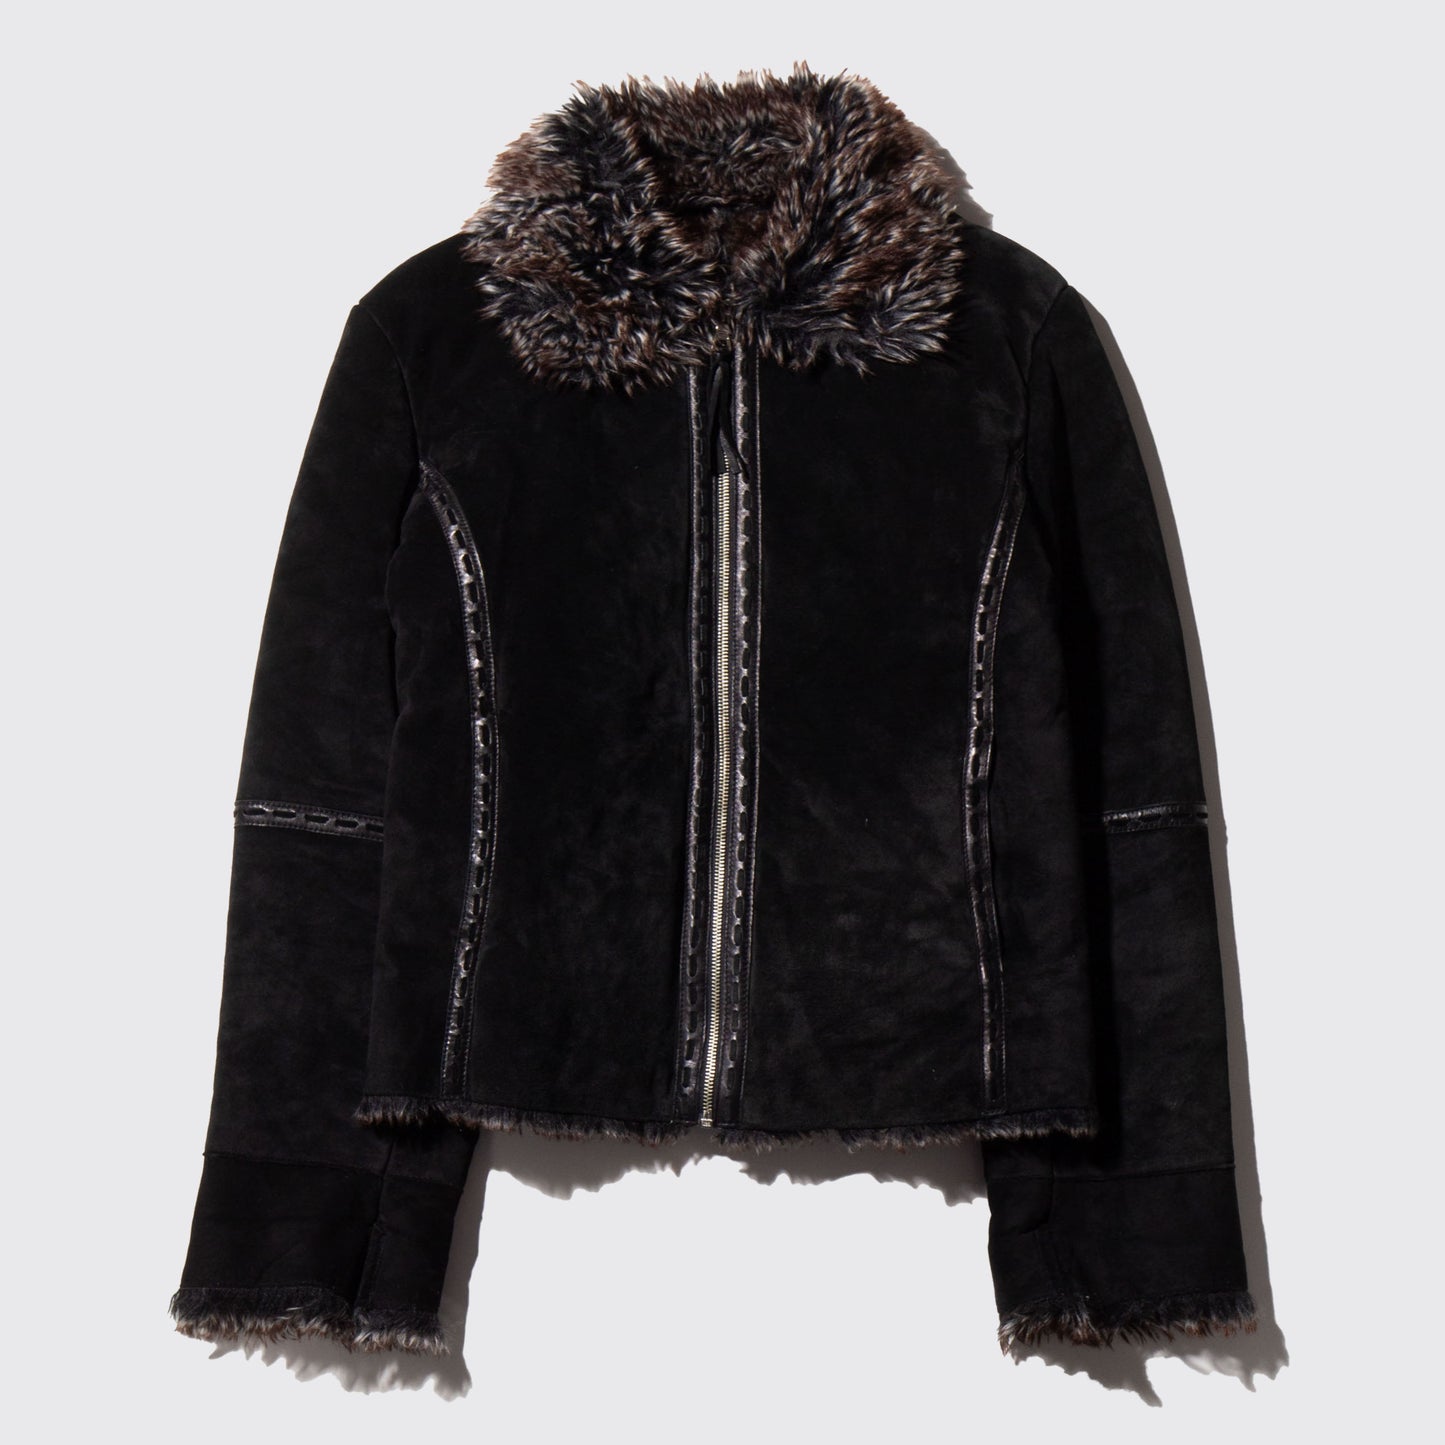 vintage fur combi short leather jacket